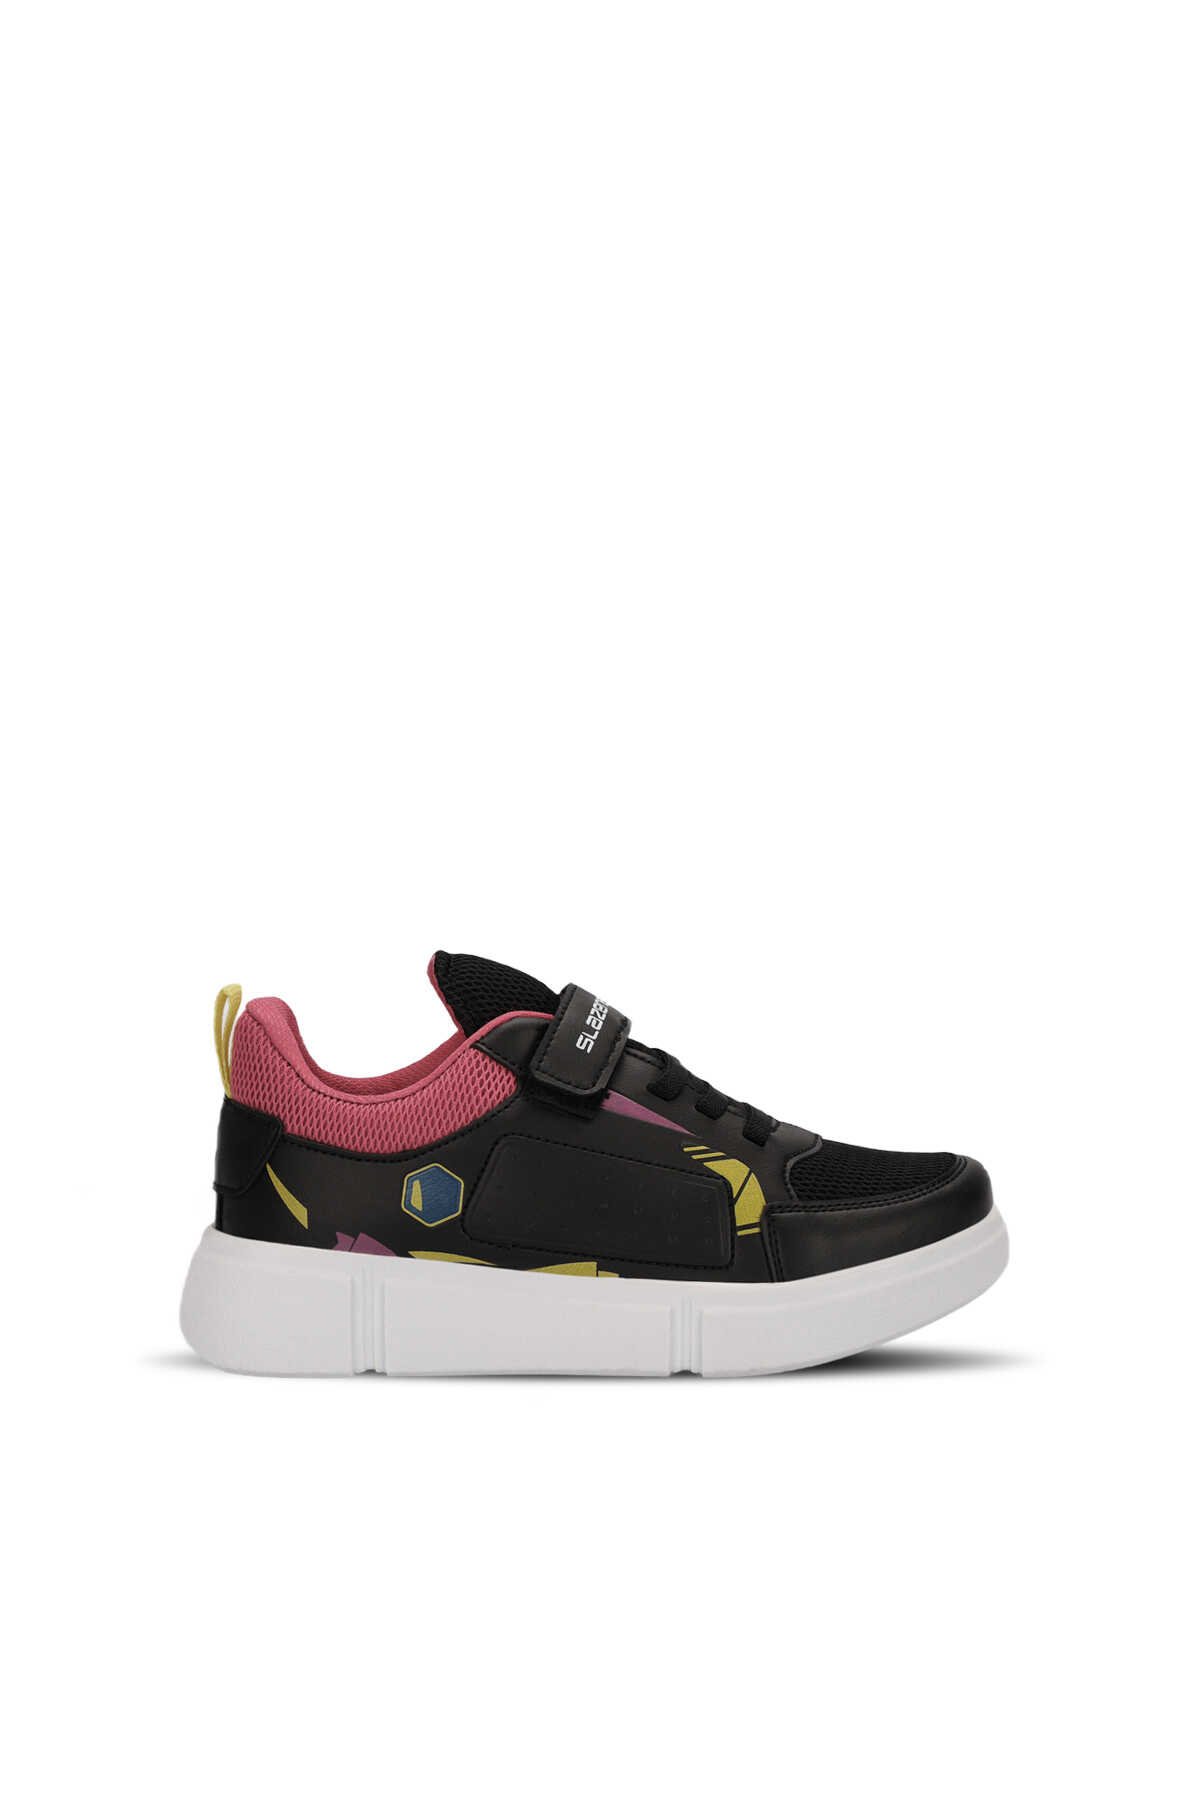 Slazenger - Slazenger KEPA Sneaker Kız Çocuk Ayakkabı Siyah / Fuşya